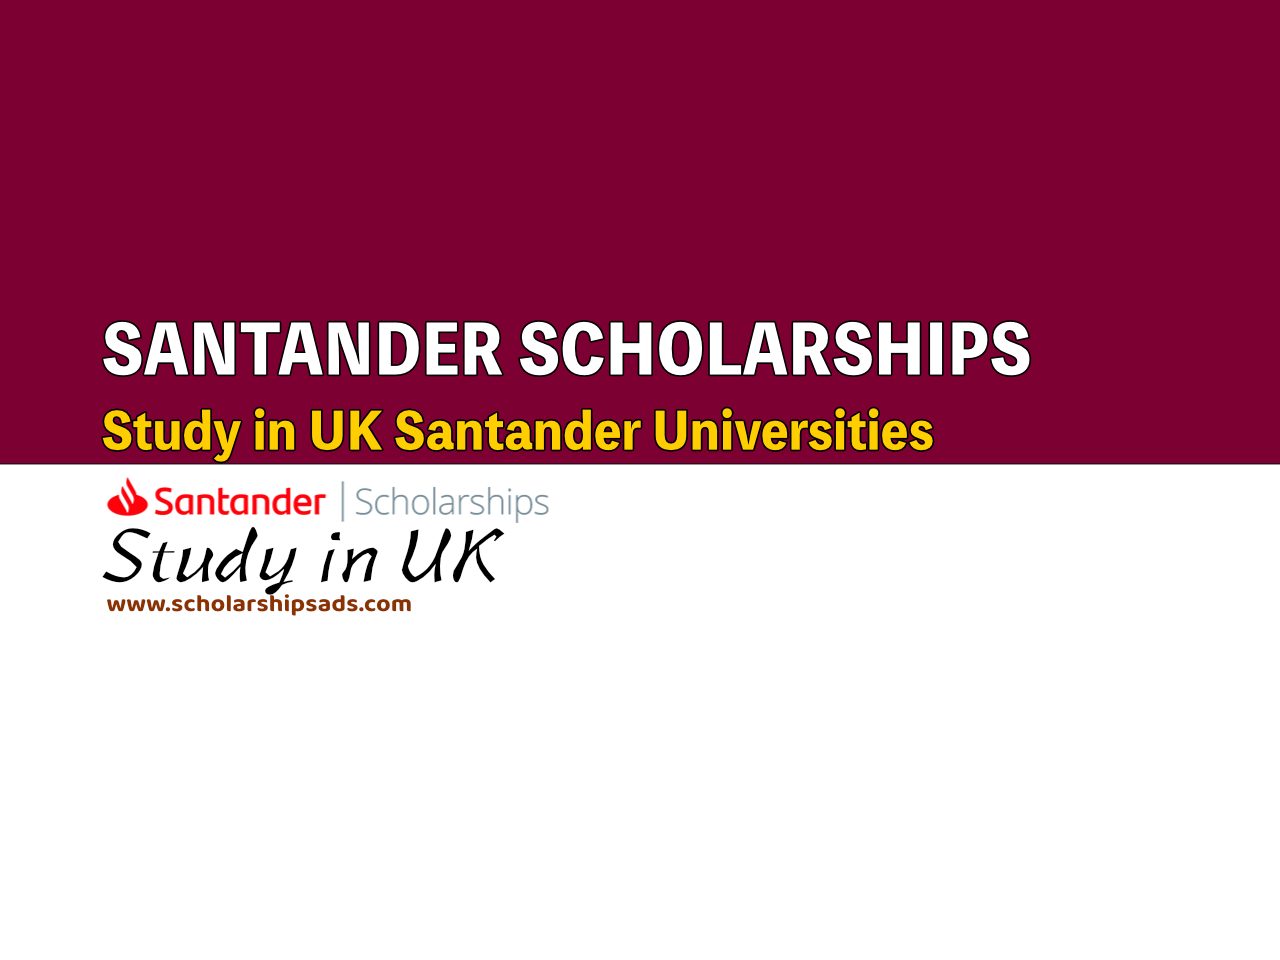  Santander Scholarships. 